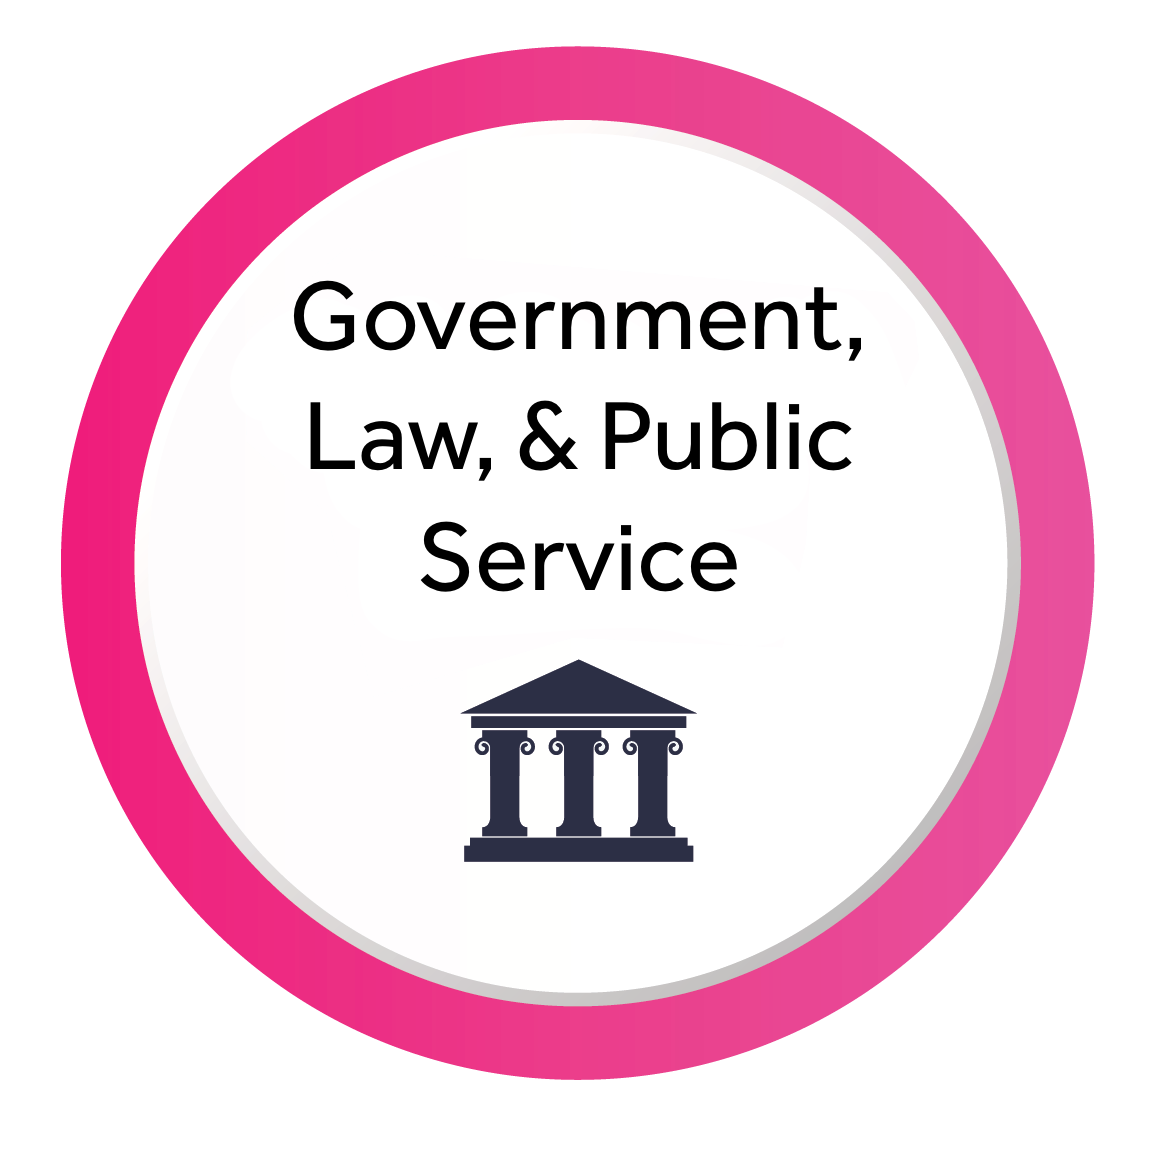 Government, Law, & Public Service